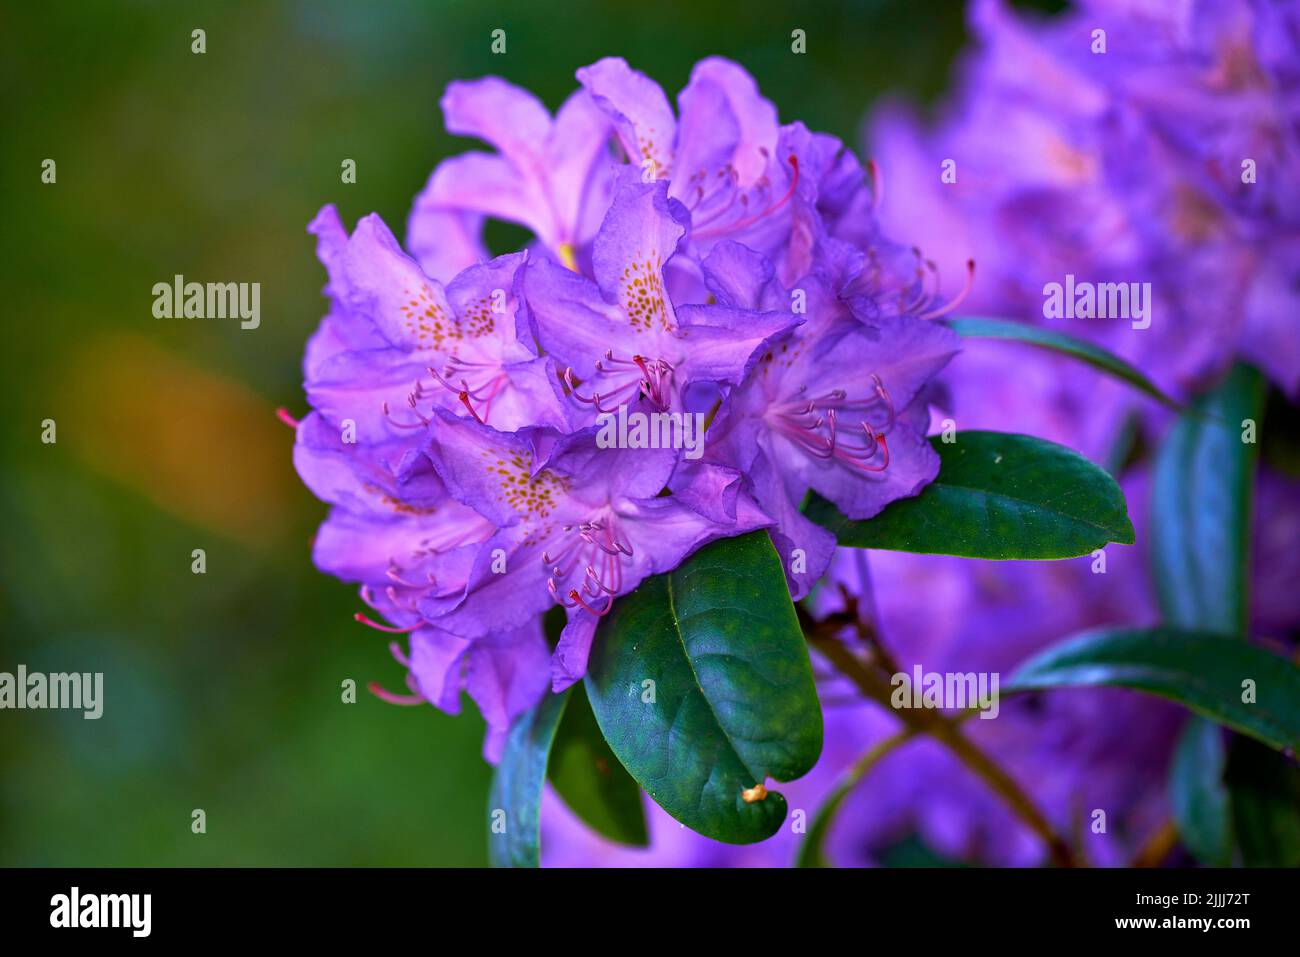 Im Sommer wachsen in einem Garten im Hinterhof wunderschöne, violette und anwachsende Rhododendronblüten. Nahaufnahme von blühenden Blattpflanzen, die sich öffnen und blühen Stockfoto